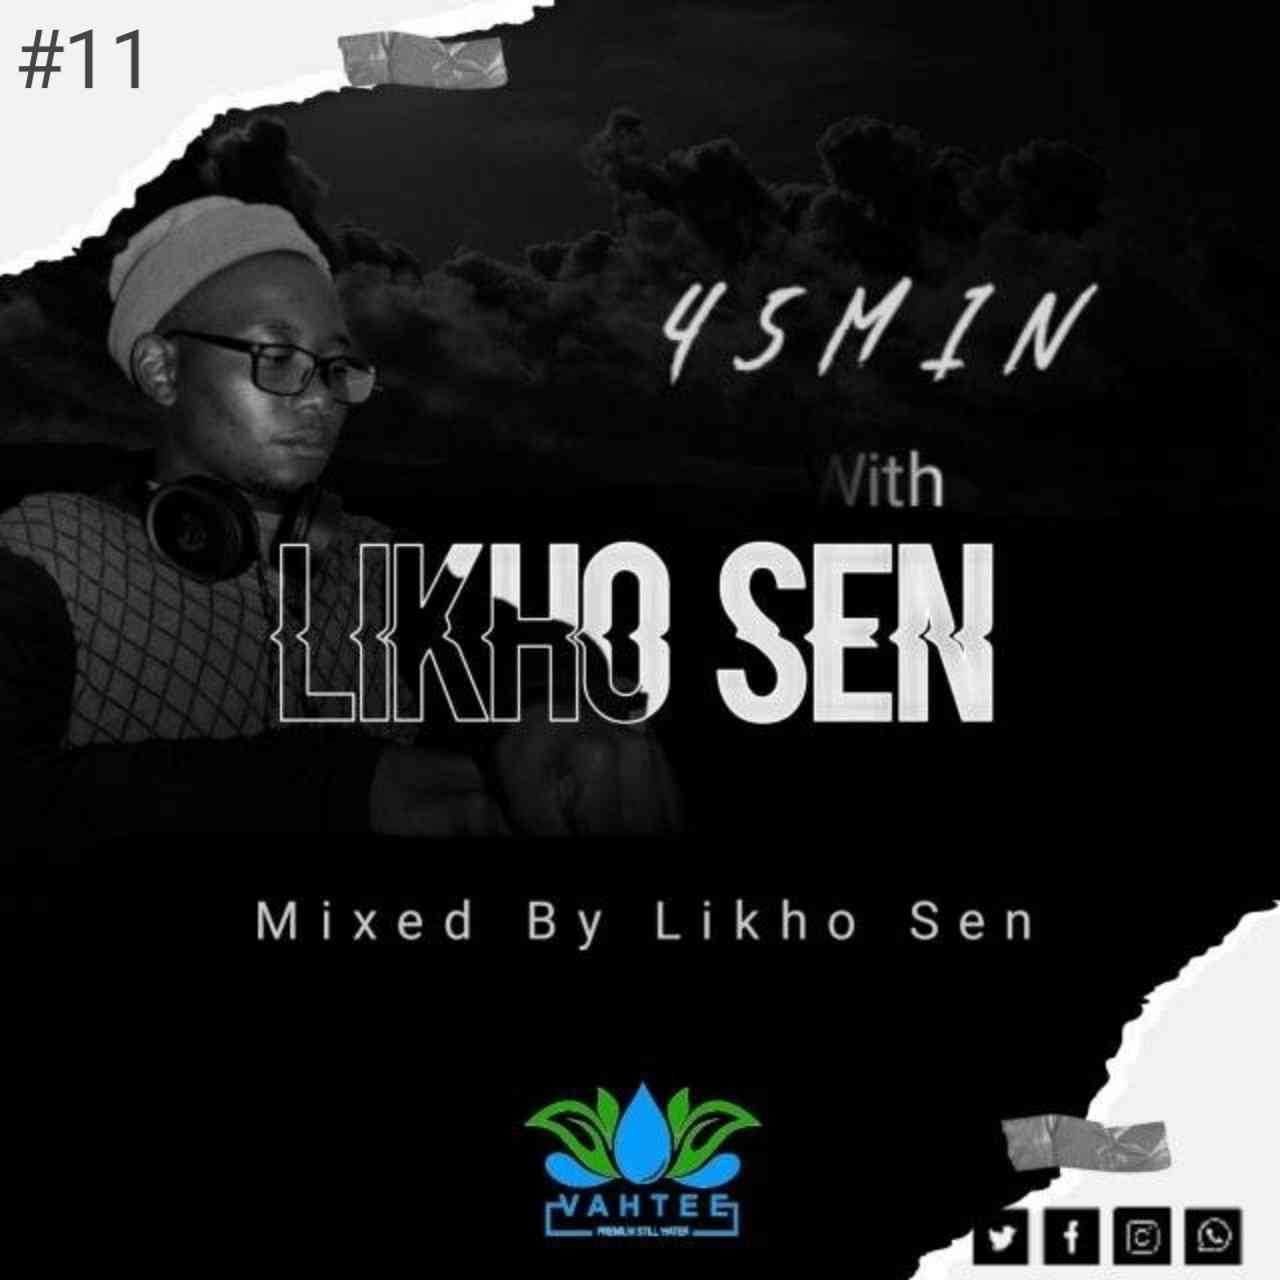 Likho Sen - 45Min WLS #11 